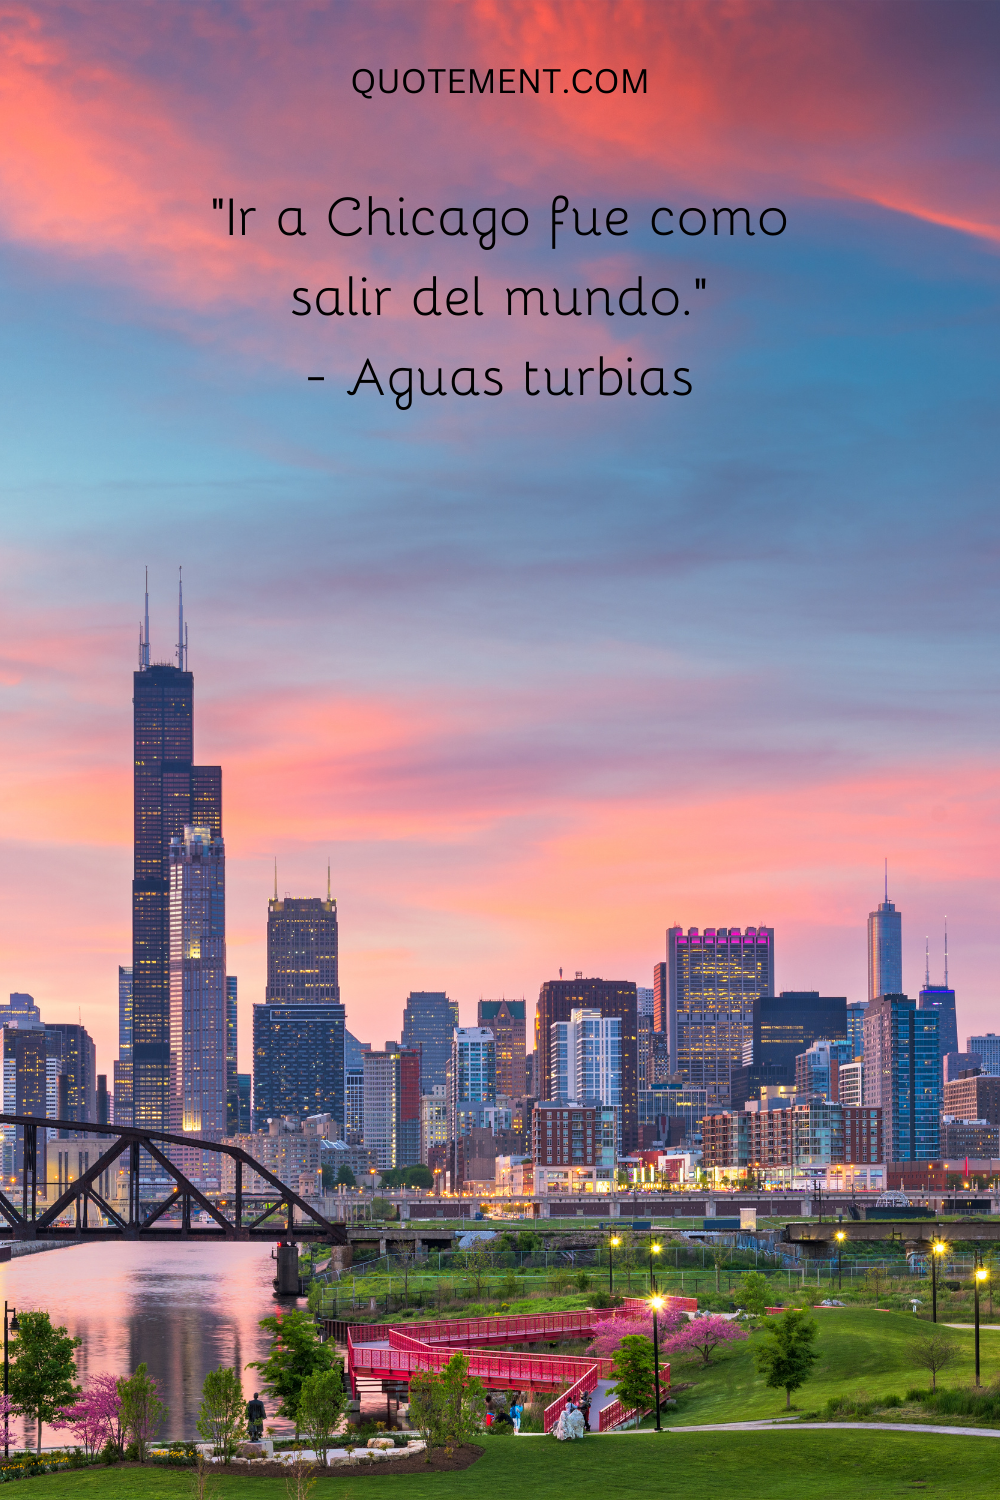 "Ir a Chicago era como salir del mundo". - Muddy Waters